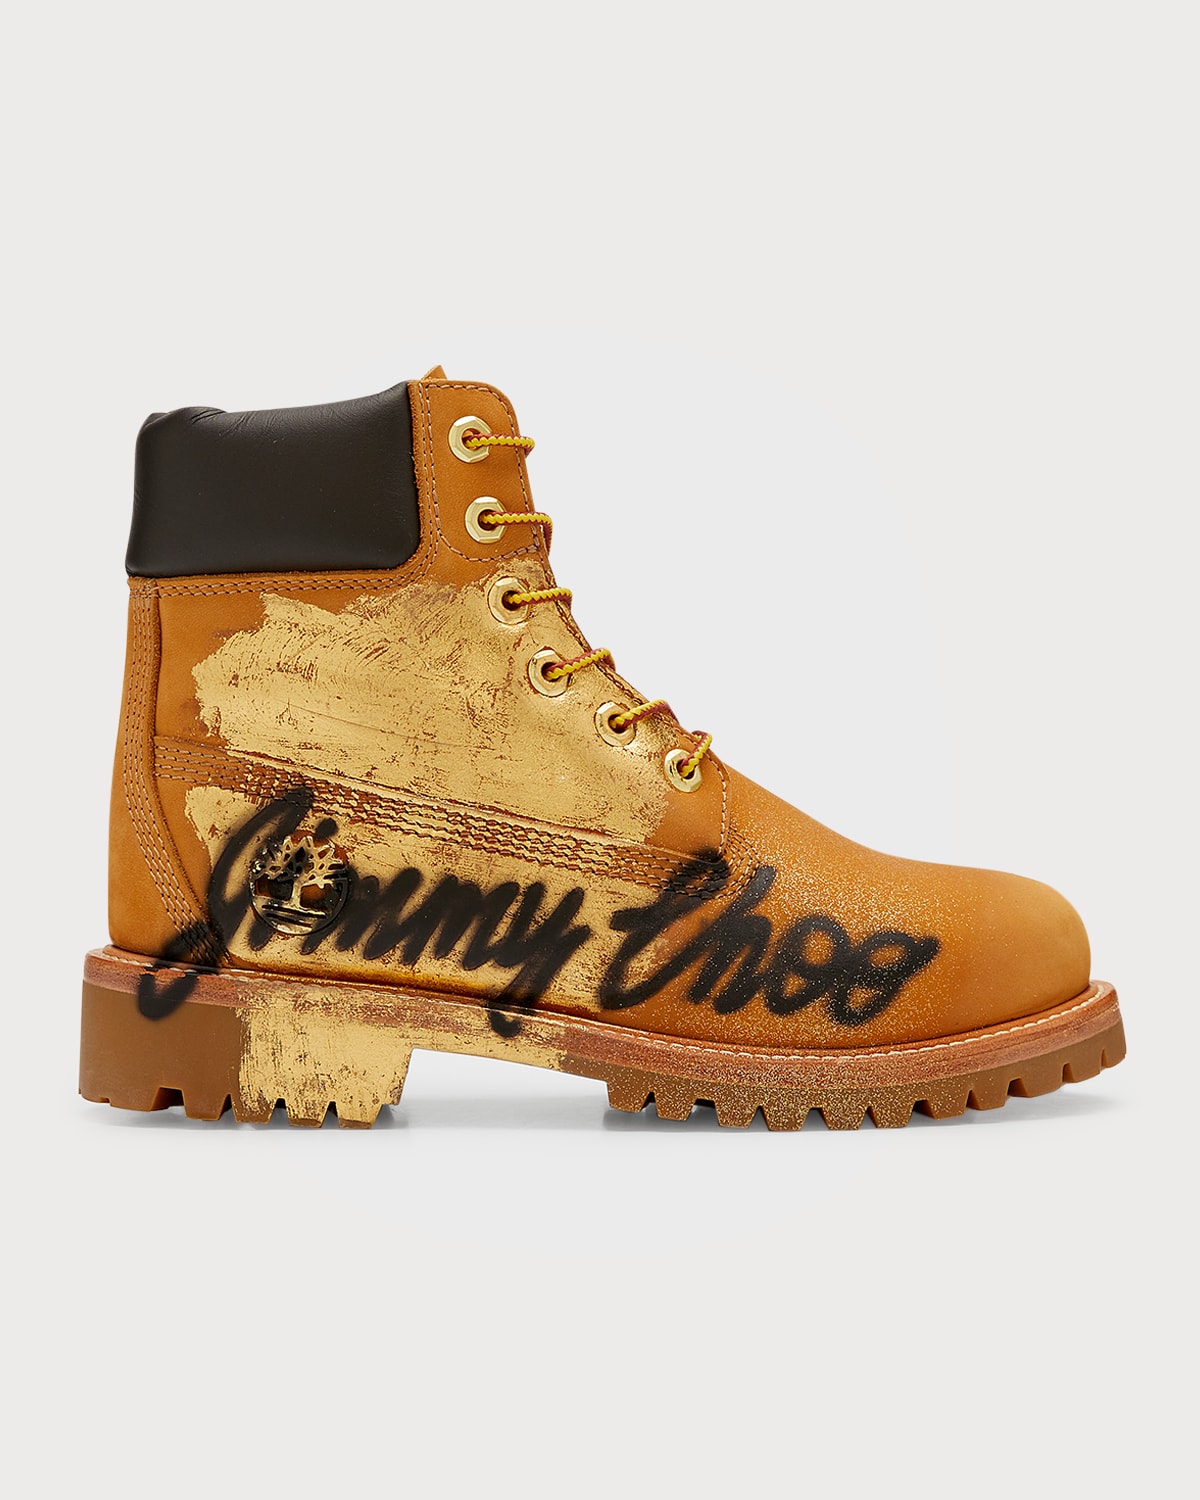 Jimmy Choo x Timberland Graffiti Utility Boots